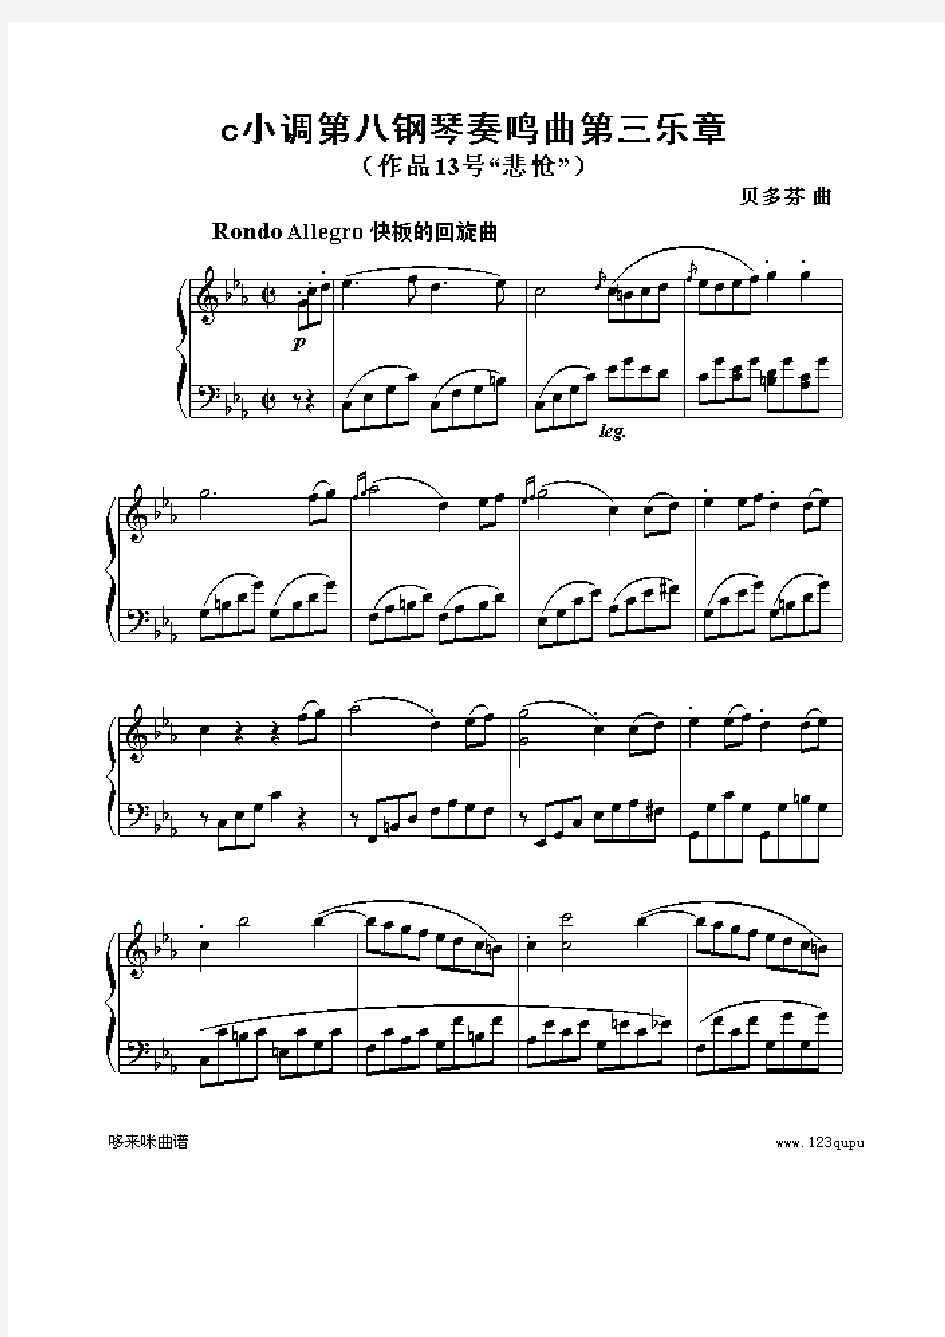 贝多芬 - c小调第八钢琴奏鸣曲第三乐章(作品13号“悲怆”)钢琴谱